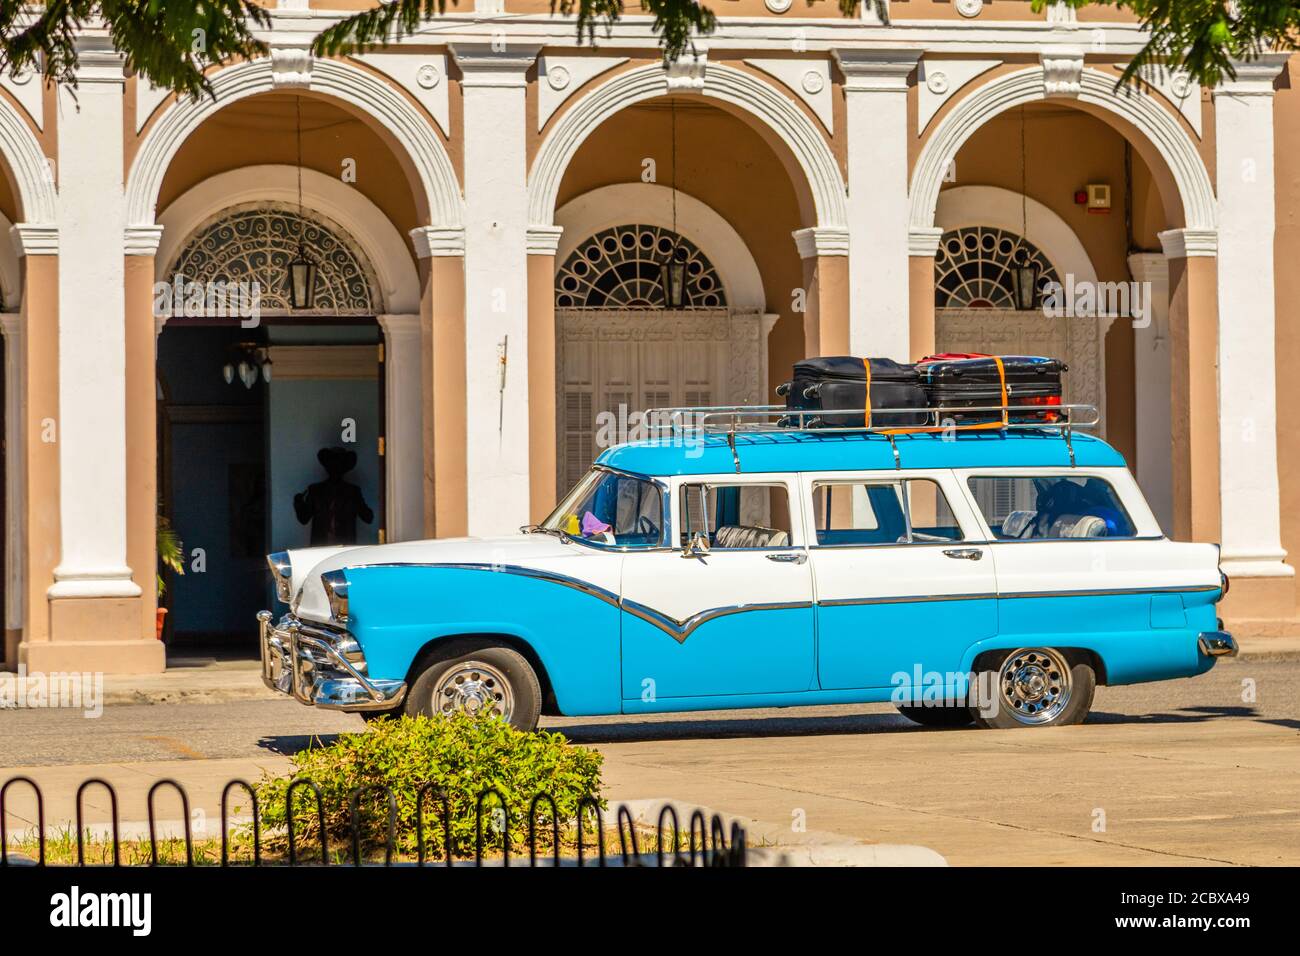 Vieux rouge et blanc cabriolet voiture rétro dans le centre de La Havane, Cuba Banque D'Images